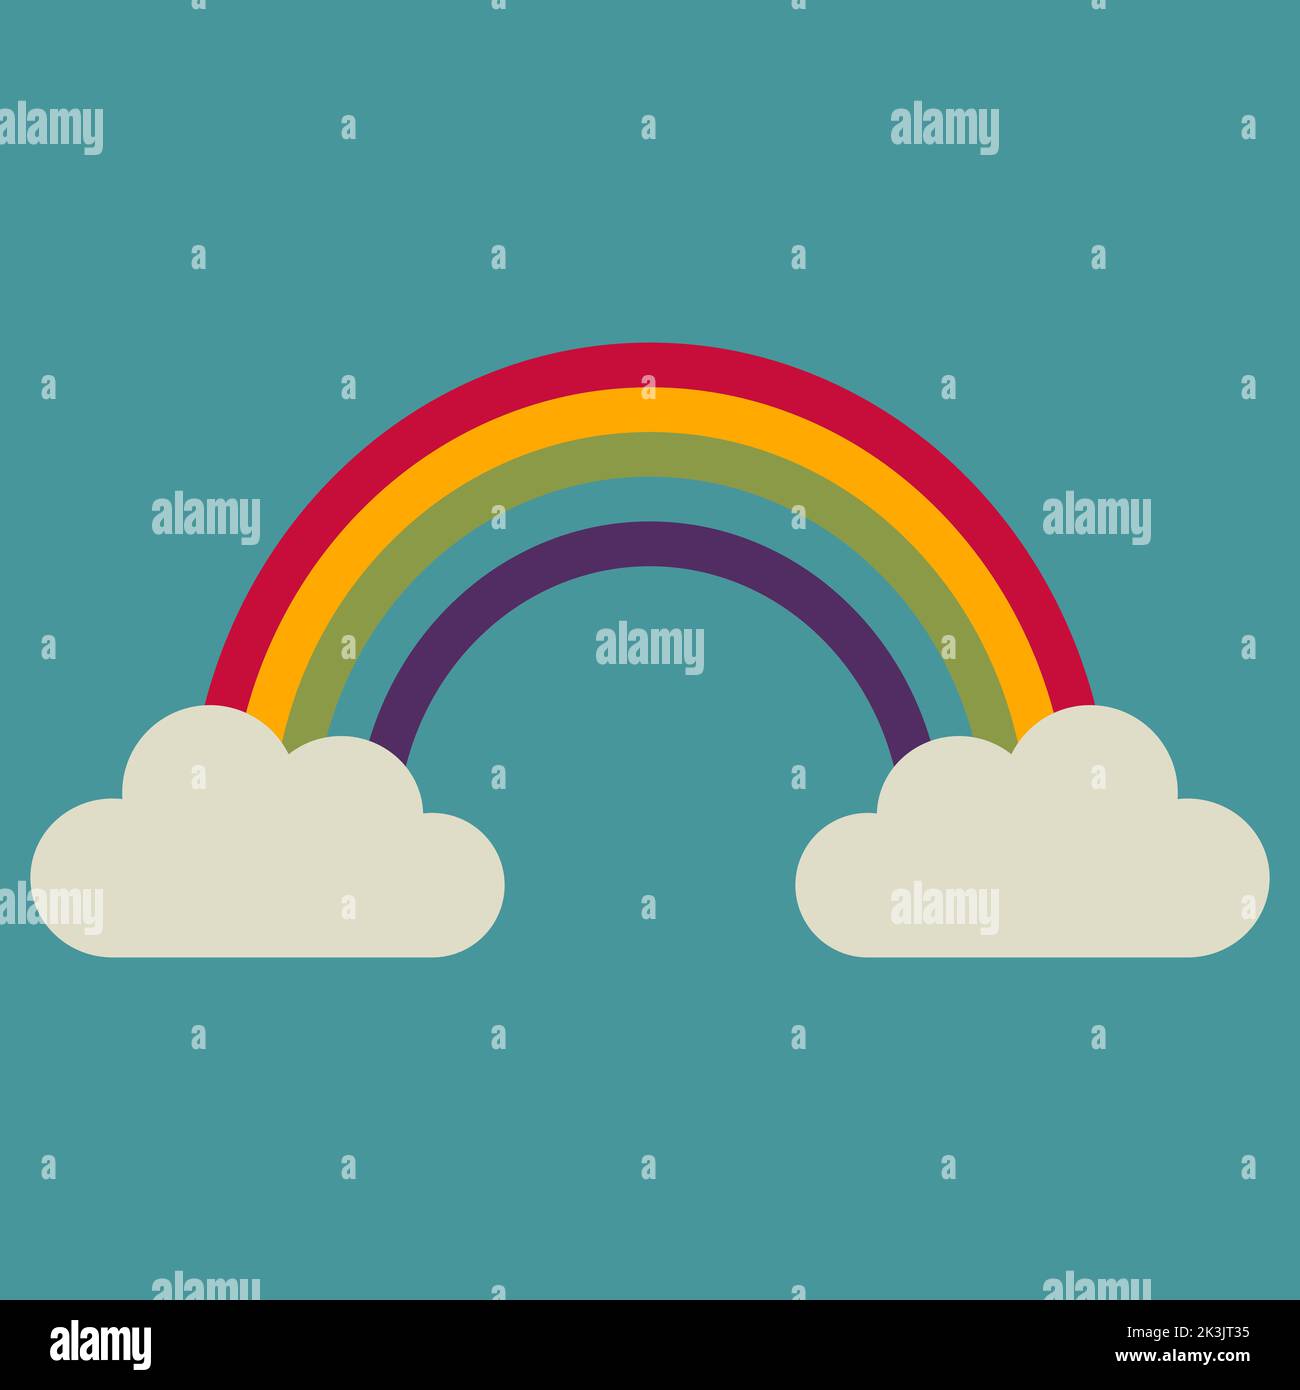 Illustrazione di un arcobaleno e di due nuvole. Toni scuri. Immagine vettoriale. Illustrazione Vettoriale